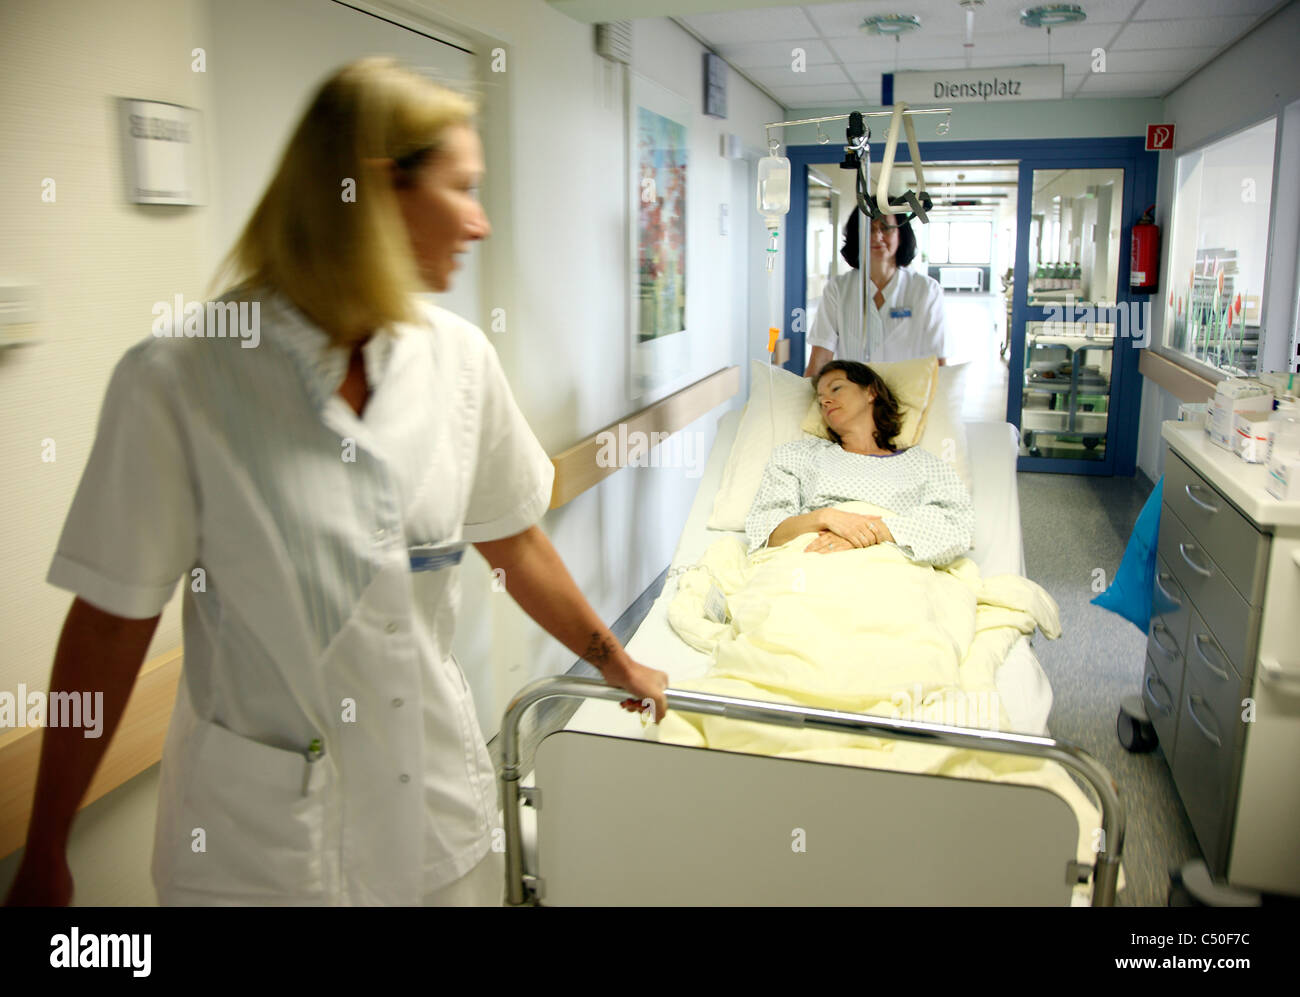 Krankenhaus. Verschieben einer Patientin in ihrem Bett aus ihr  Krankenzimmer zu einem Untersuchungsraum Krankenschwestern Stockfotografie  - Alamy